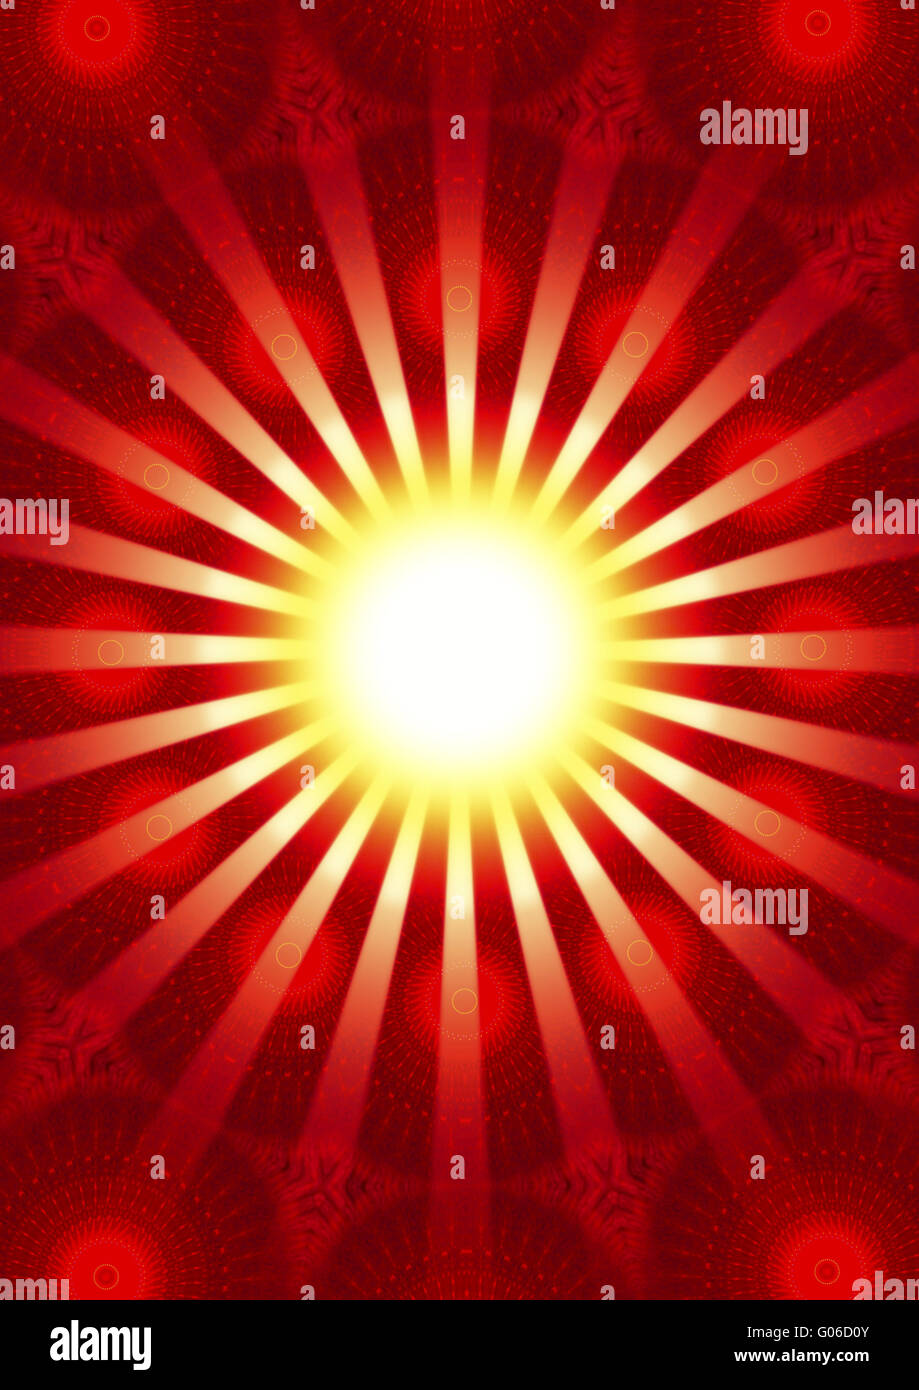 Les rayons de l'espoir - Soleil - rouge Banque D'Images